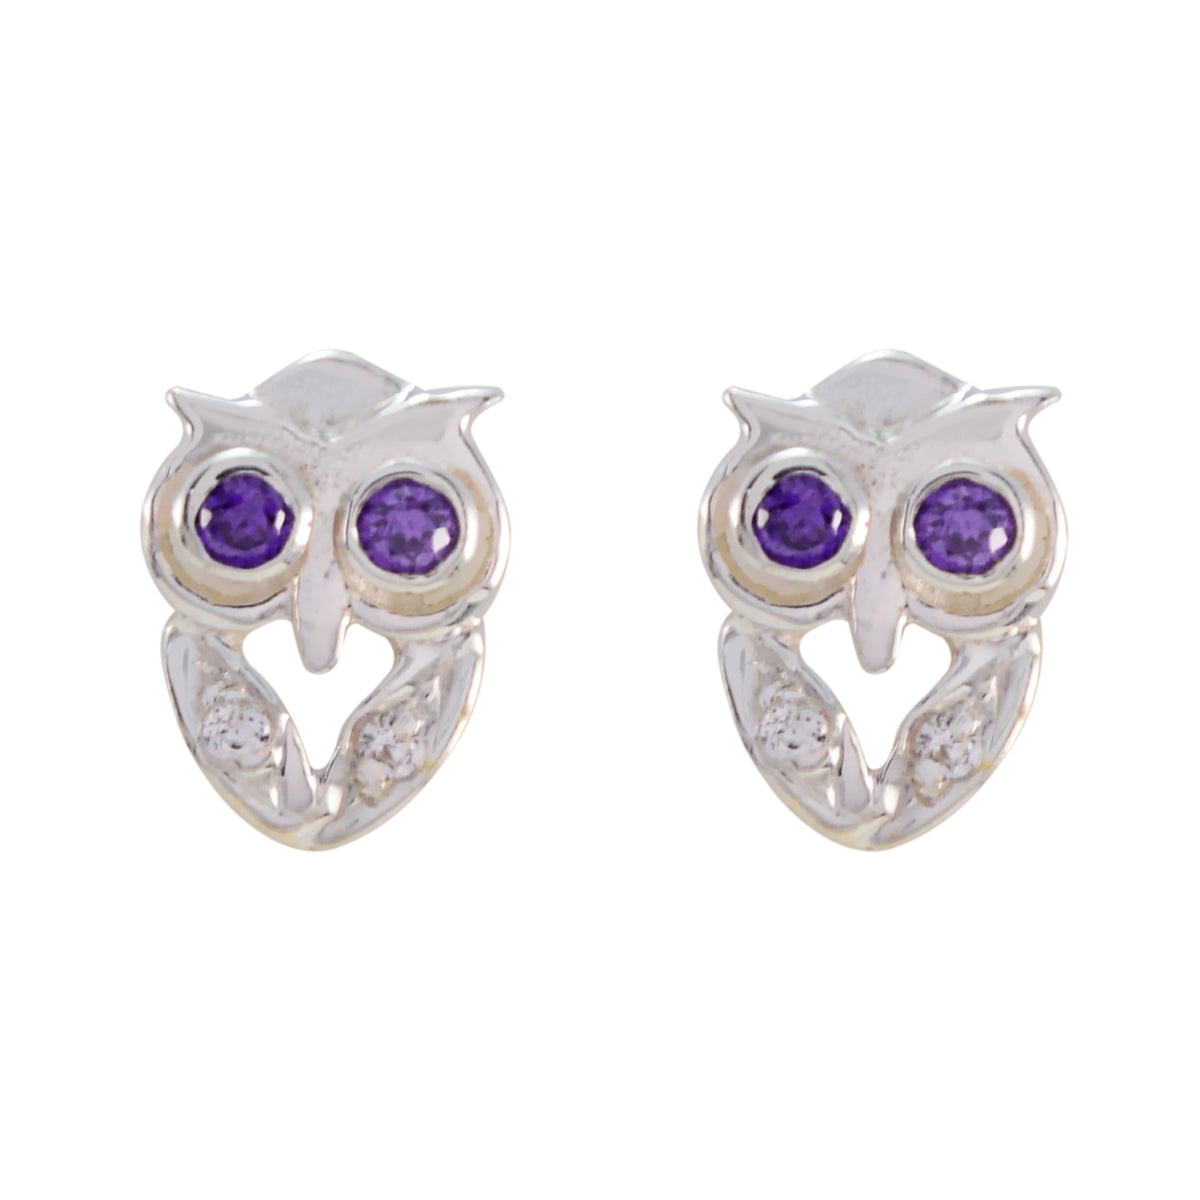 Riyo Beauteous Sterling Silver Earring For Damsel Amethyst Earring Bezel Setting Purple Earring Stud Earring